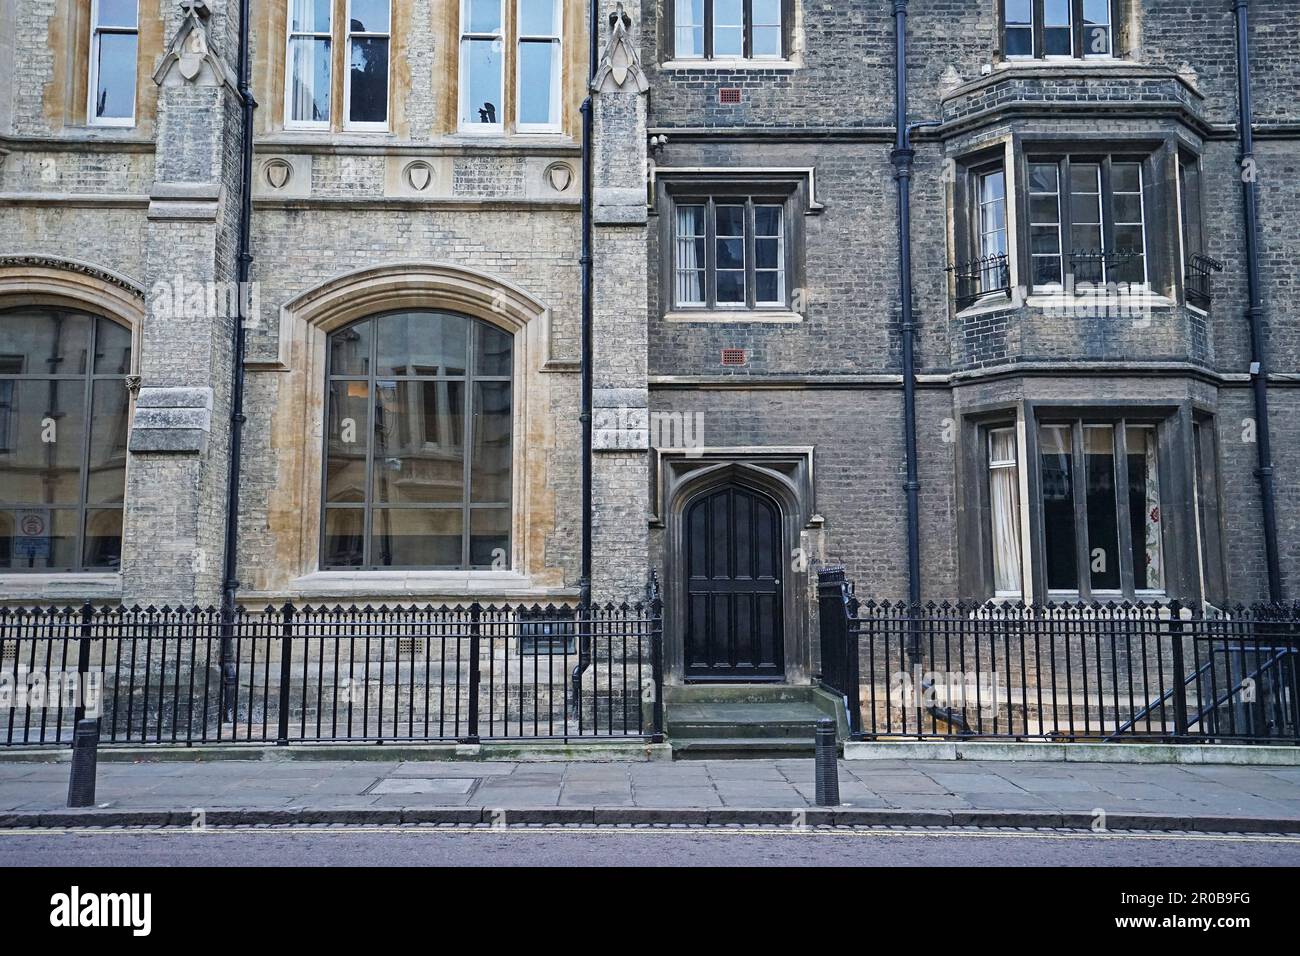 Extérieur de l'architecture européenne et de la décoration de l'immeuble Oxford et rue - Angleterre, Royaume-Uni Banque D'Images